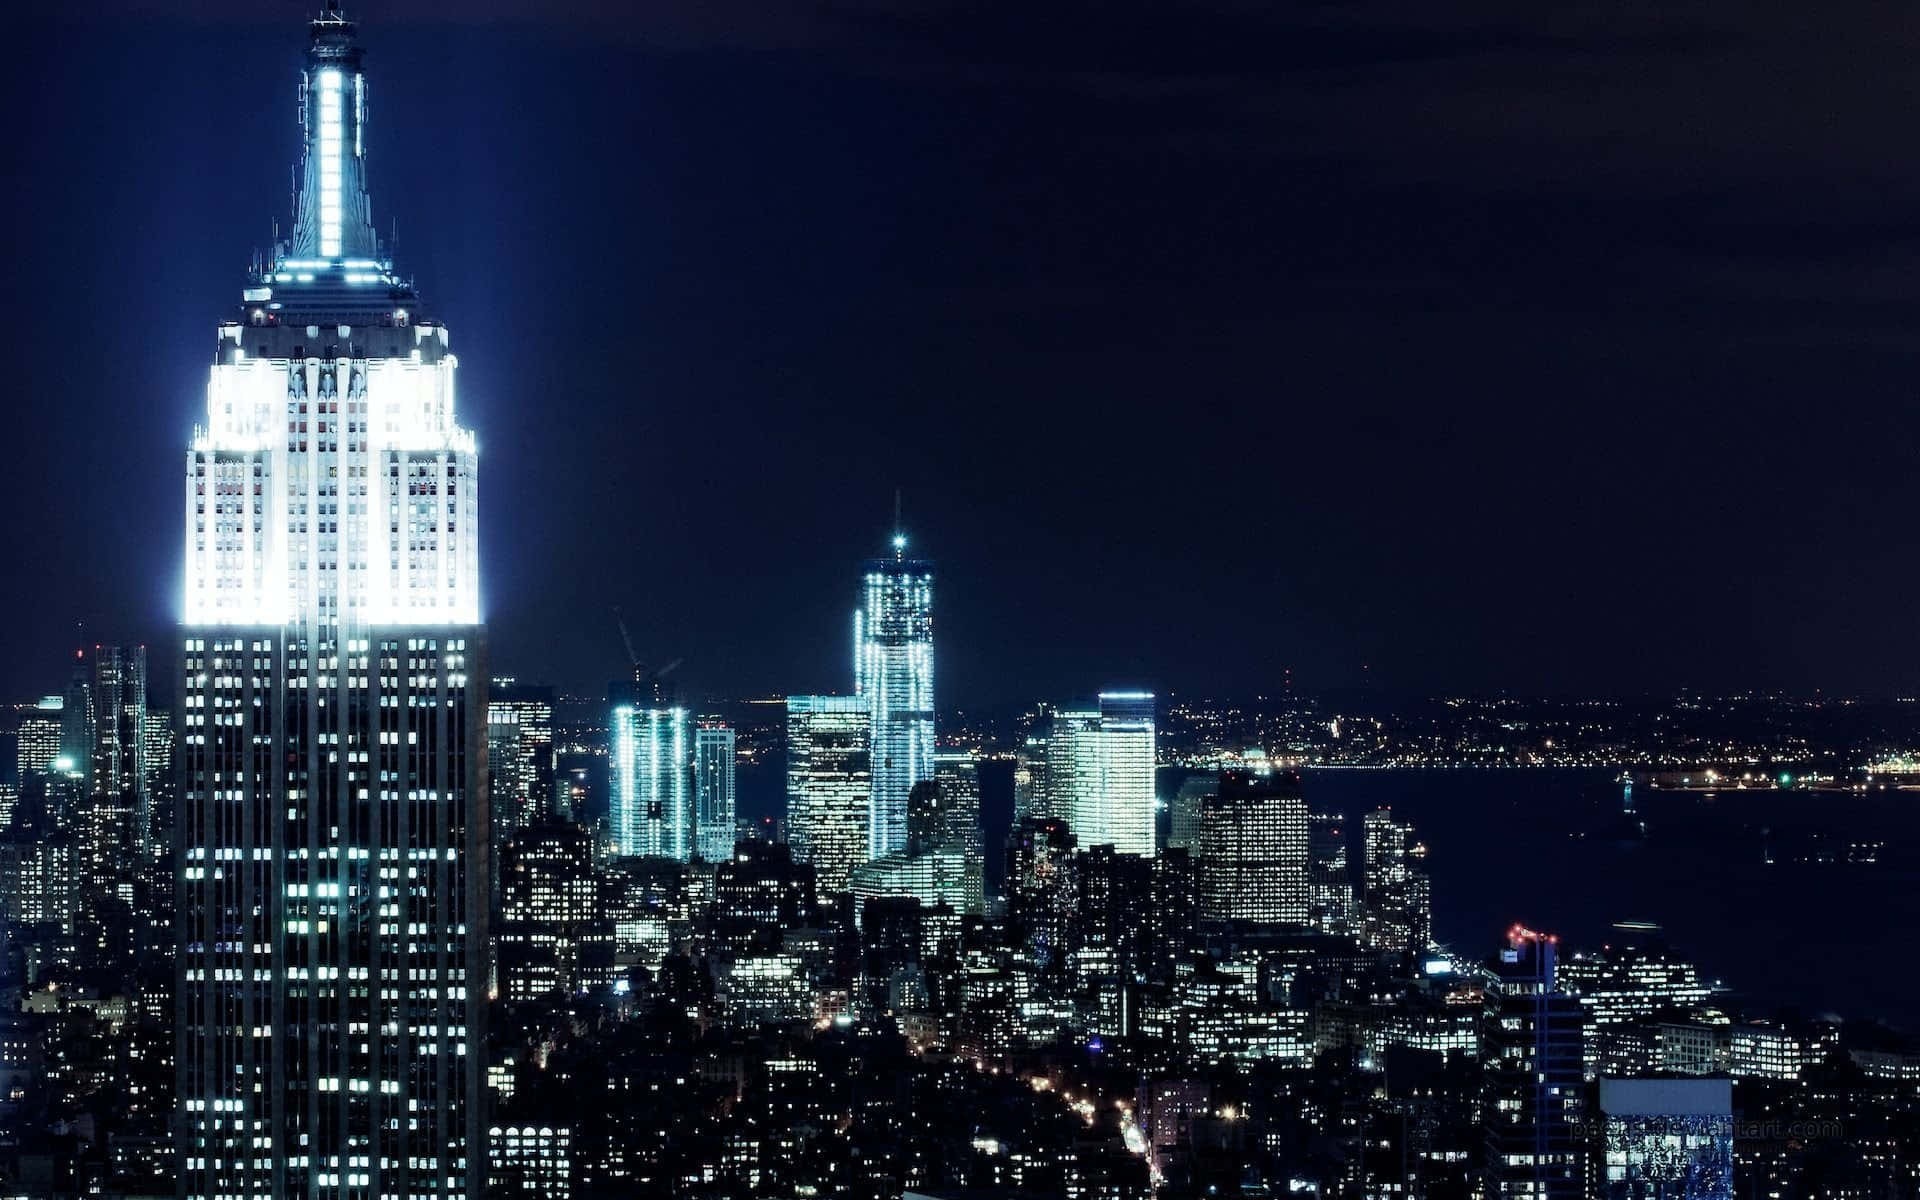 Imagendel Empire State Building De Noche En La Ciudad De Nueva York, En Blanco.